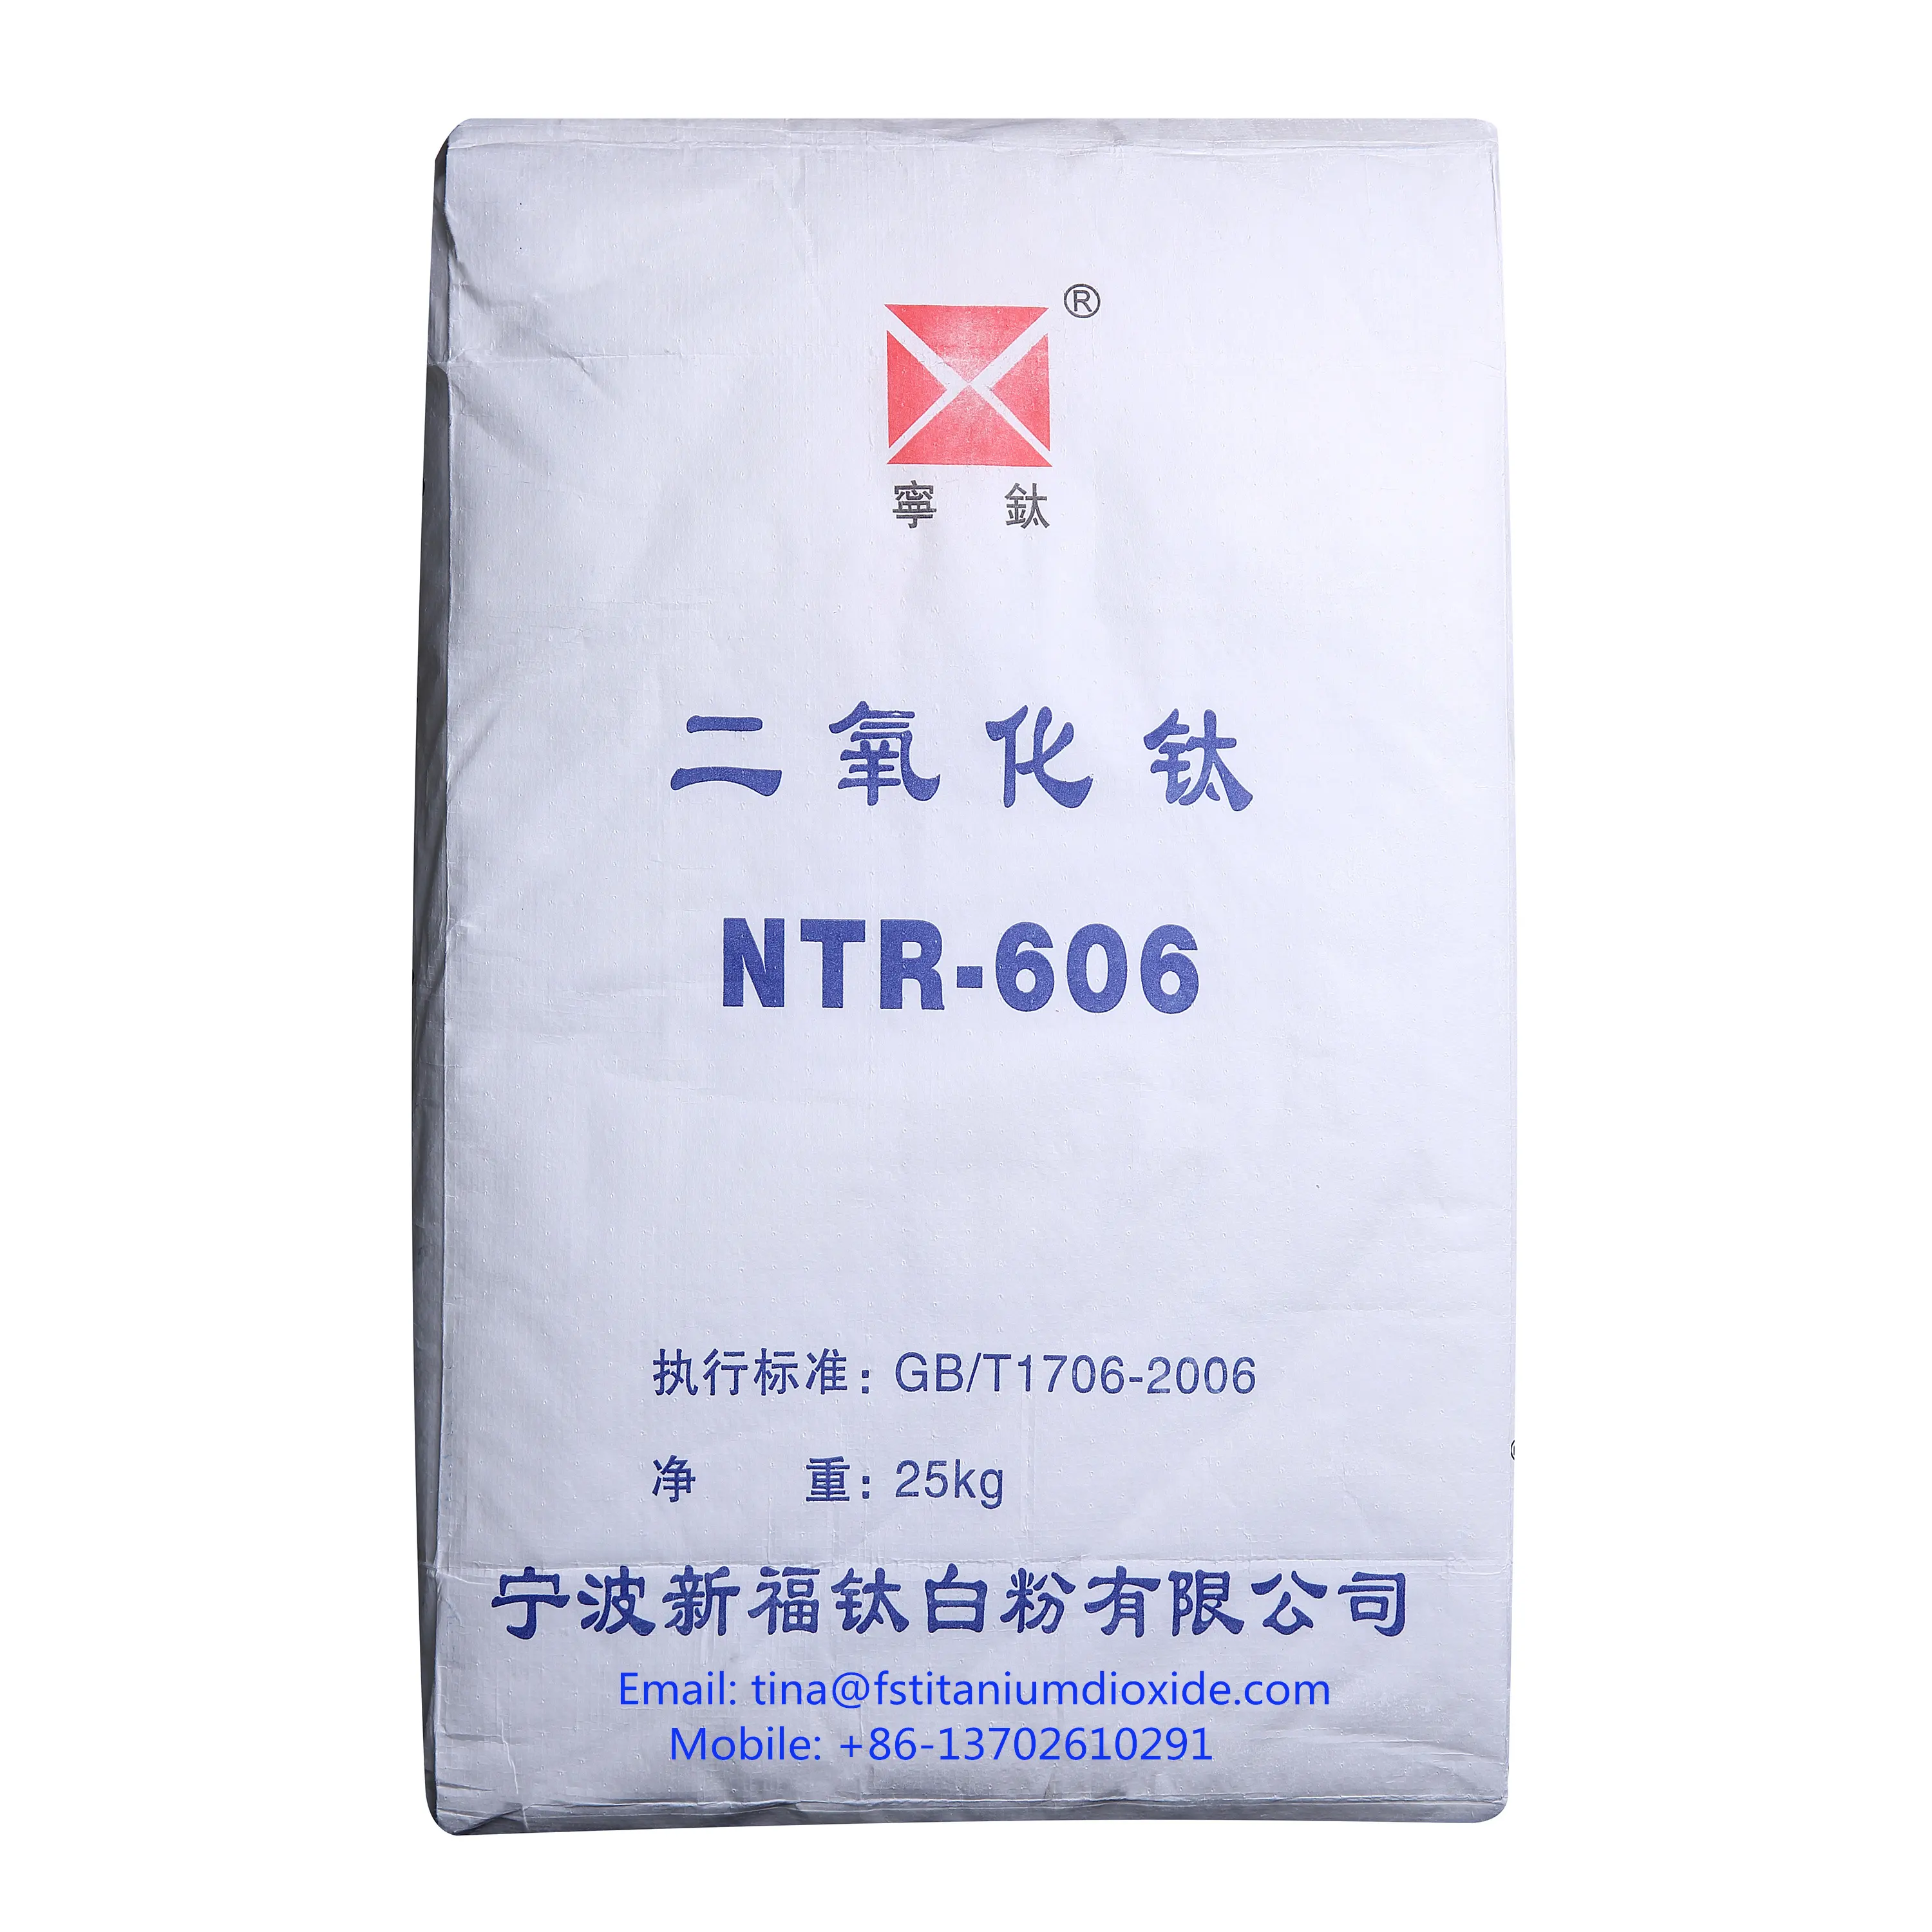 NTR-606 biossido di titanio rutilo biossido di titanio rutilo biossido di titanio prezzo